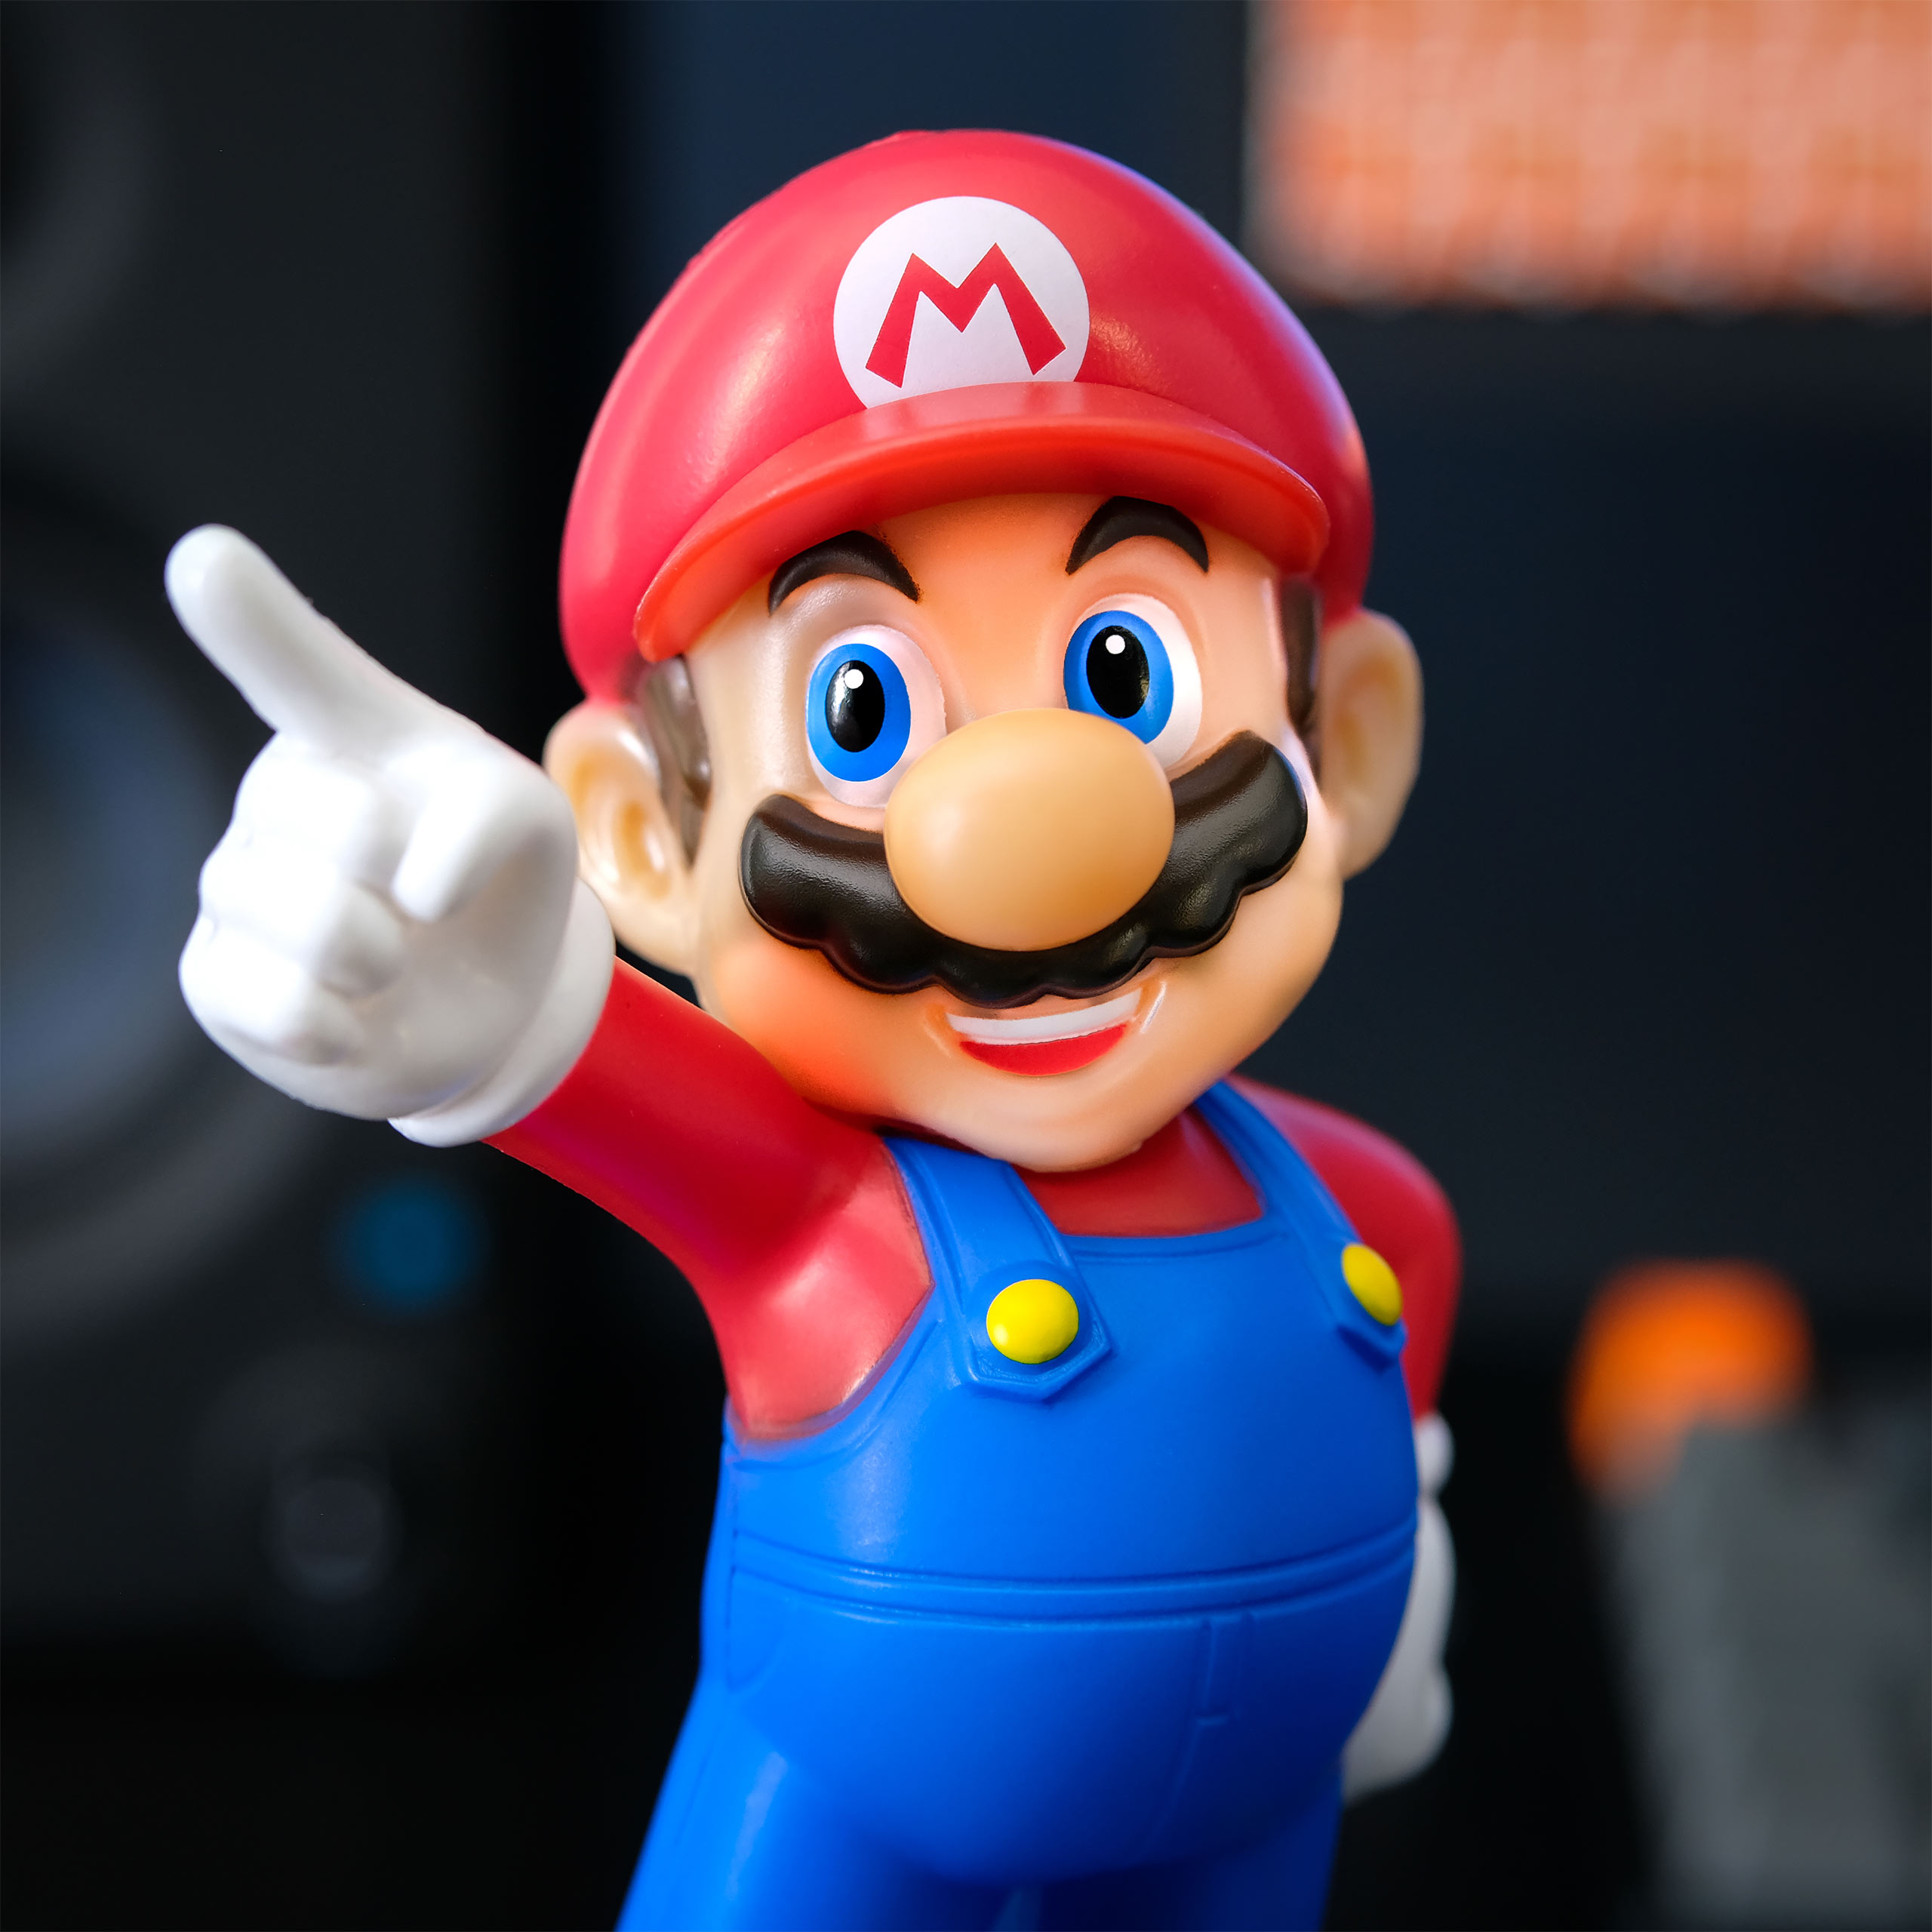 Super Mario Tischlampe